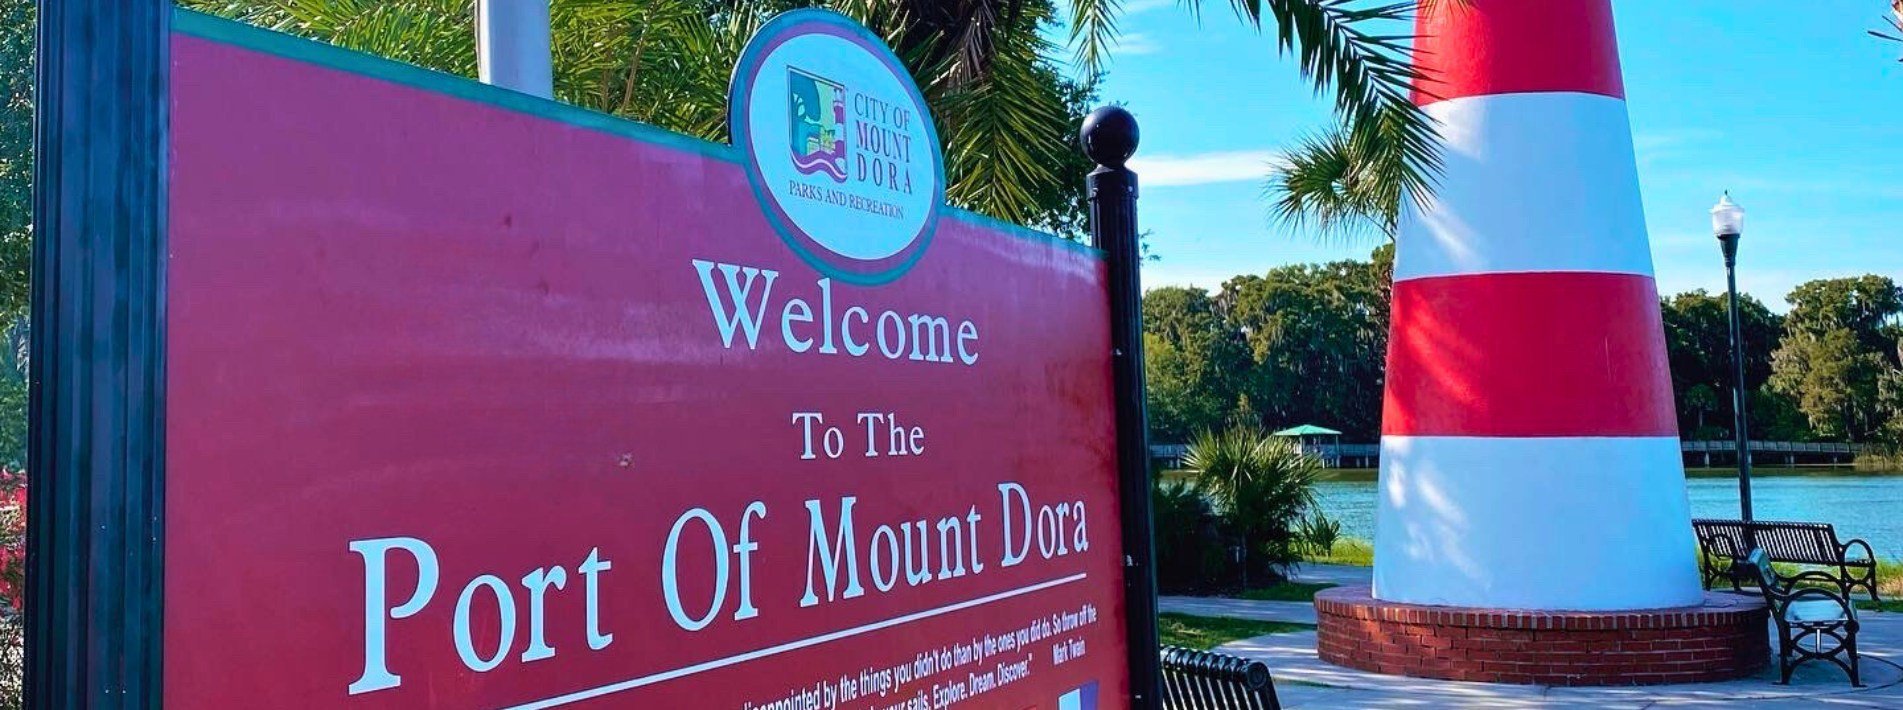 Mount Dora Real Estate